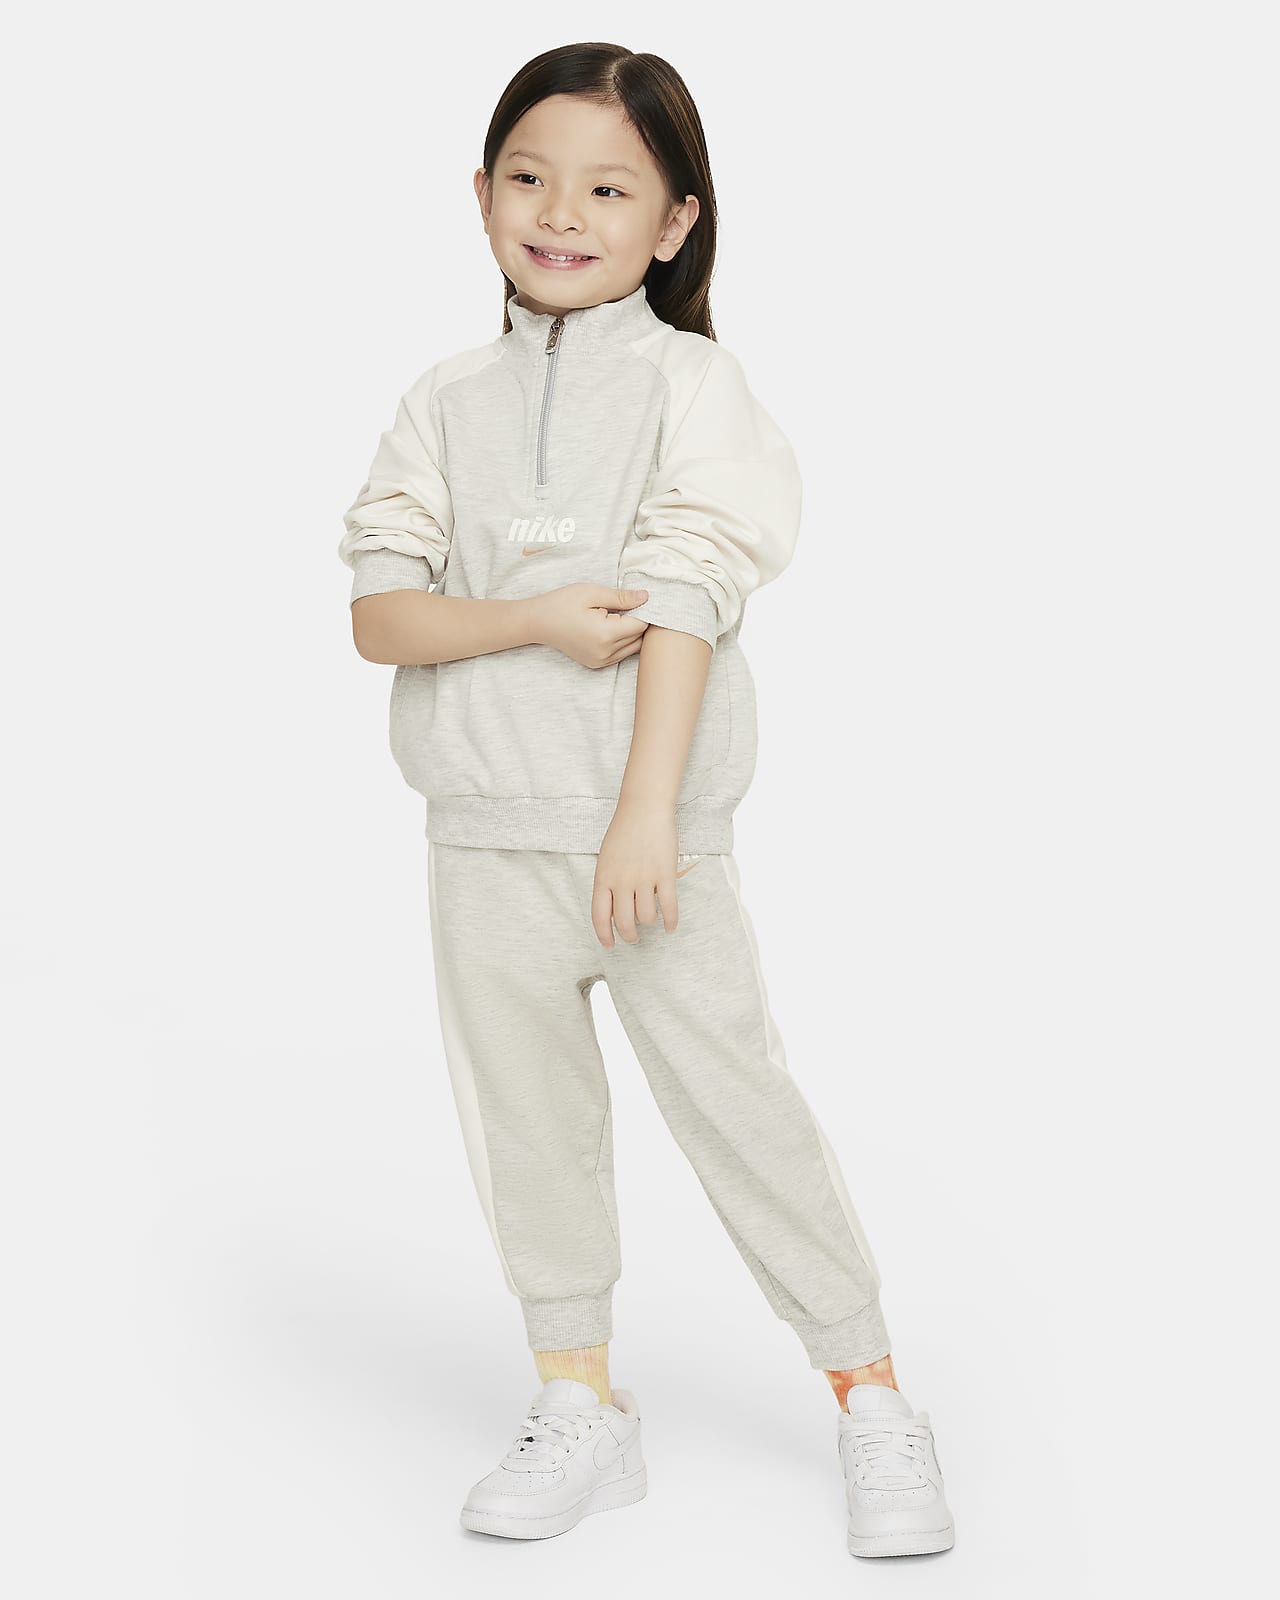 Nike E1D1 Toddler 2-Piece Half-Zip Set